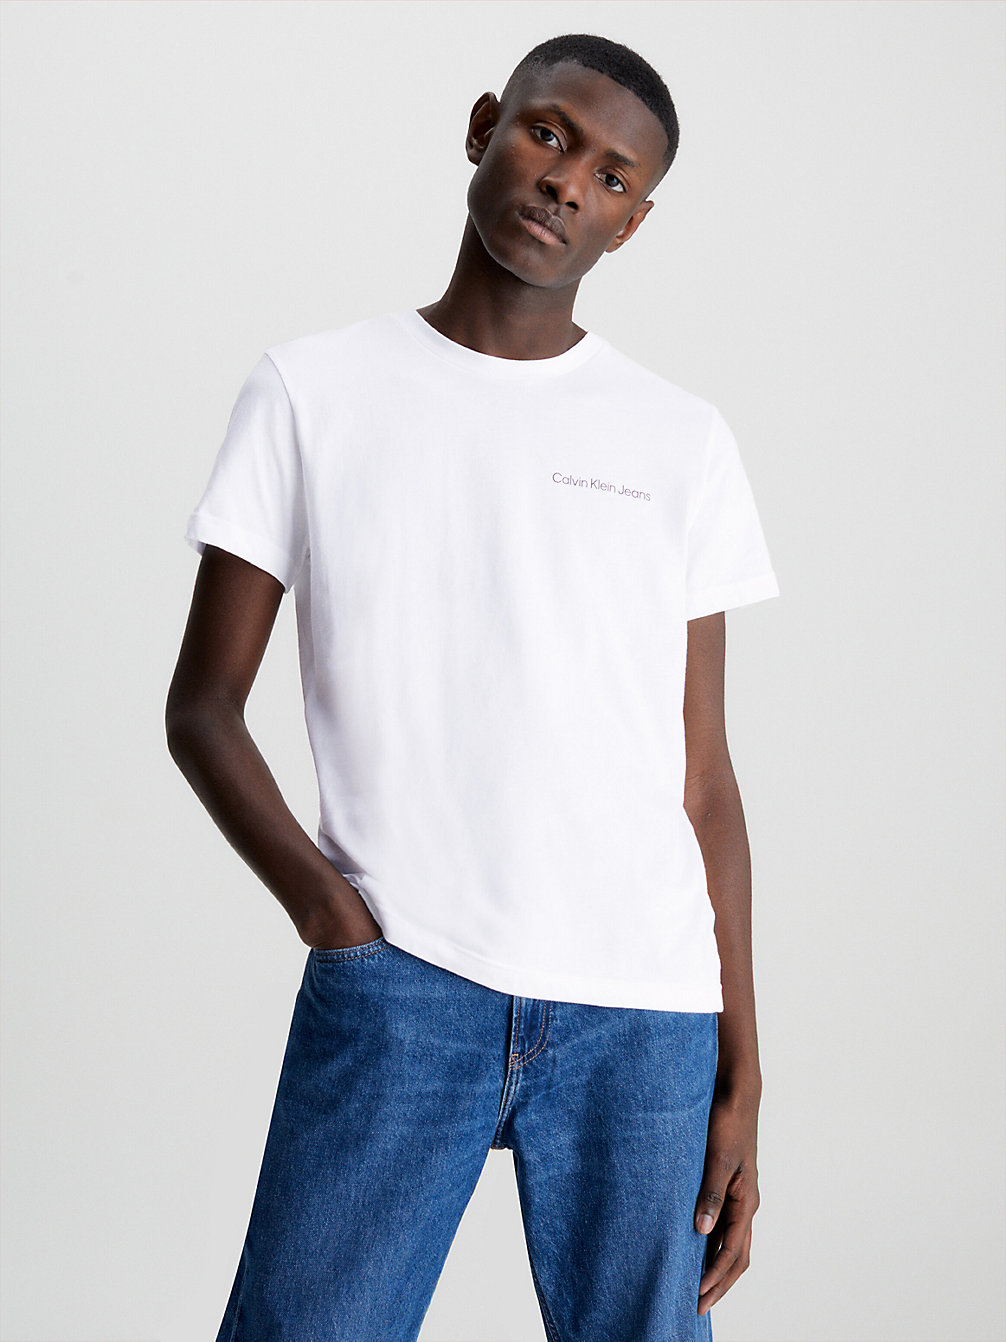 BRIGHT WHITE > Schmales Logo-T-Shirt Aus Bio-Baumwolle > undefined Herren - Calvin Klein